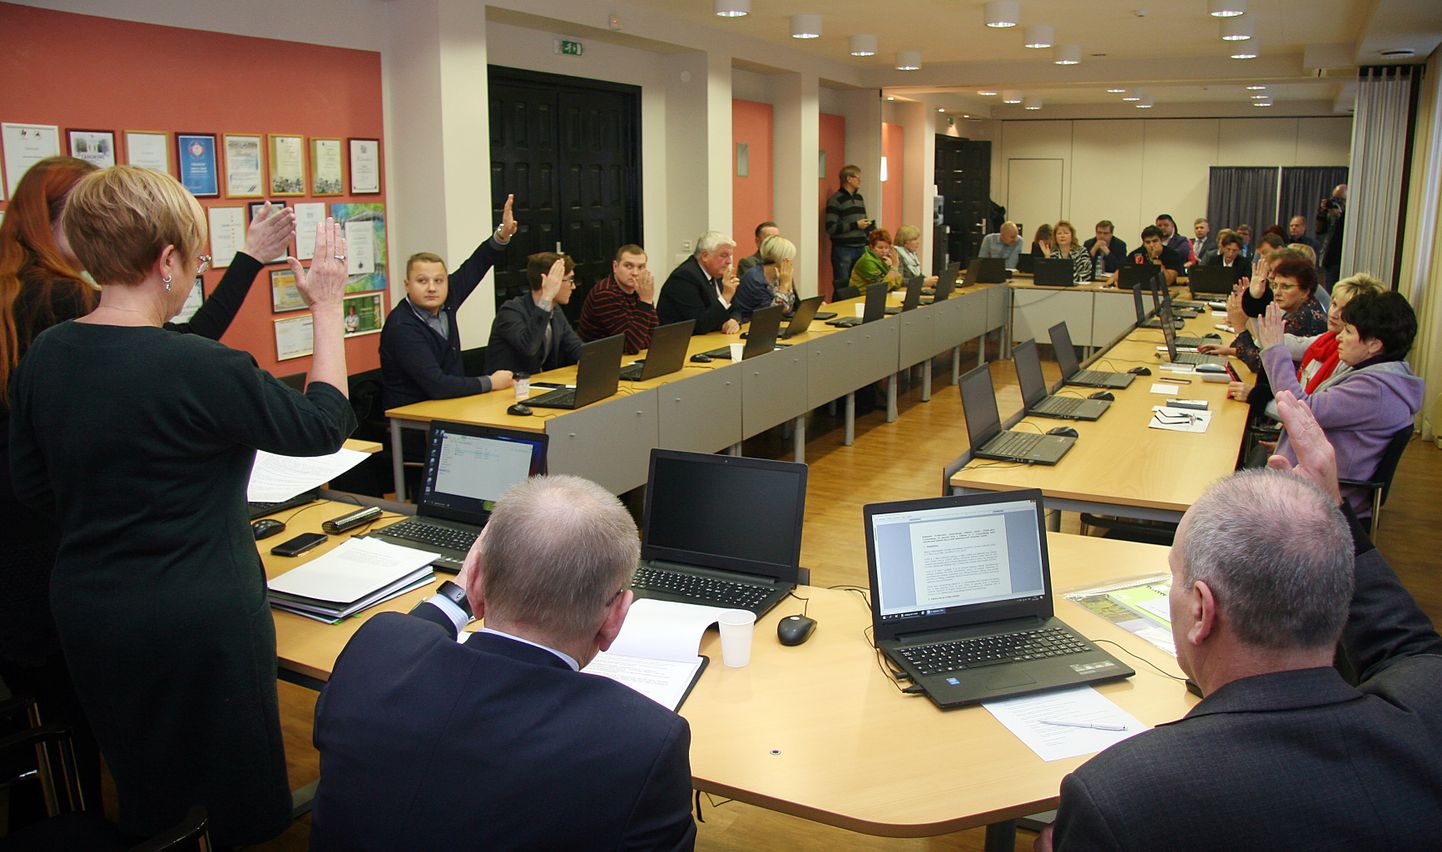 Kohtla-Järve volikogu korraldab ainsana ja esimesena Ida-Virumaa omavalitsustest täielikult elektroonilise istungi.